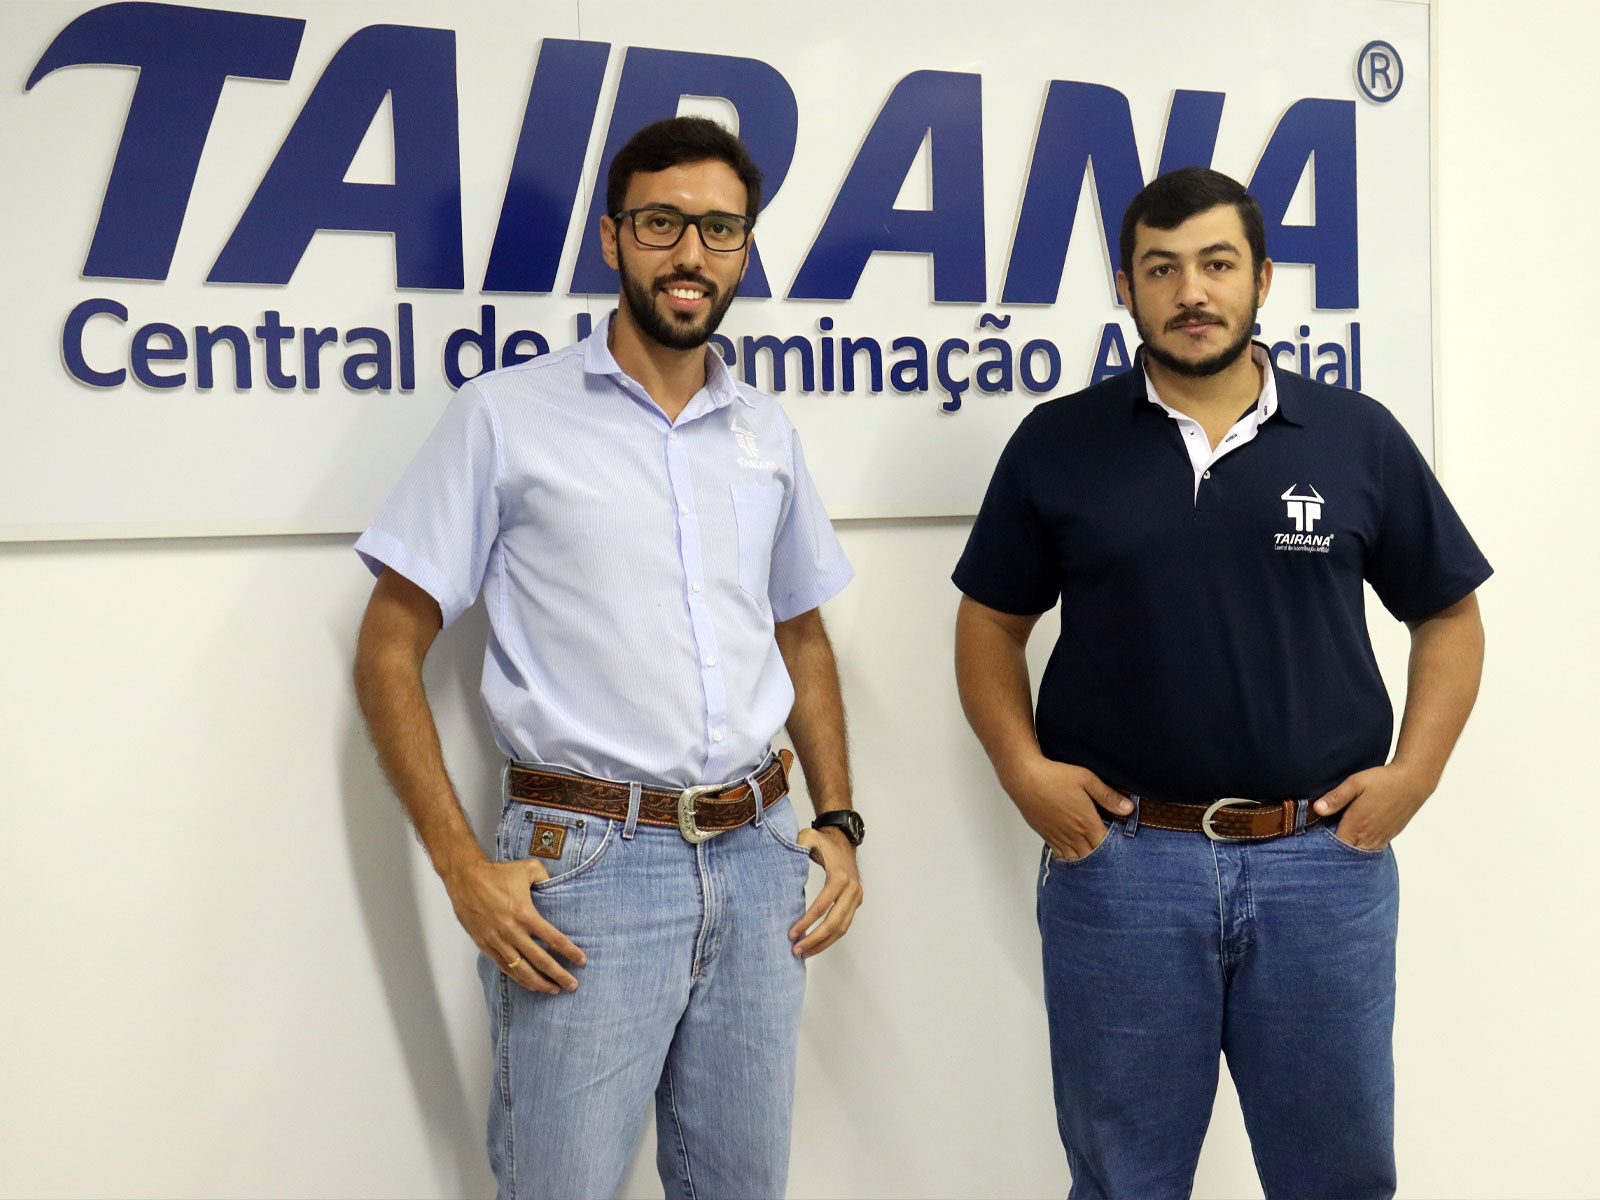 Central Tairana Anuncia Mudanças na Equipe Gerencial